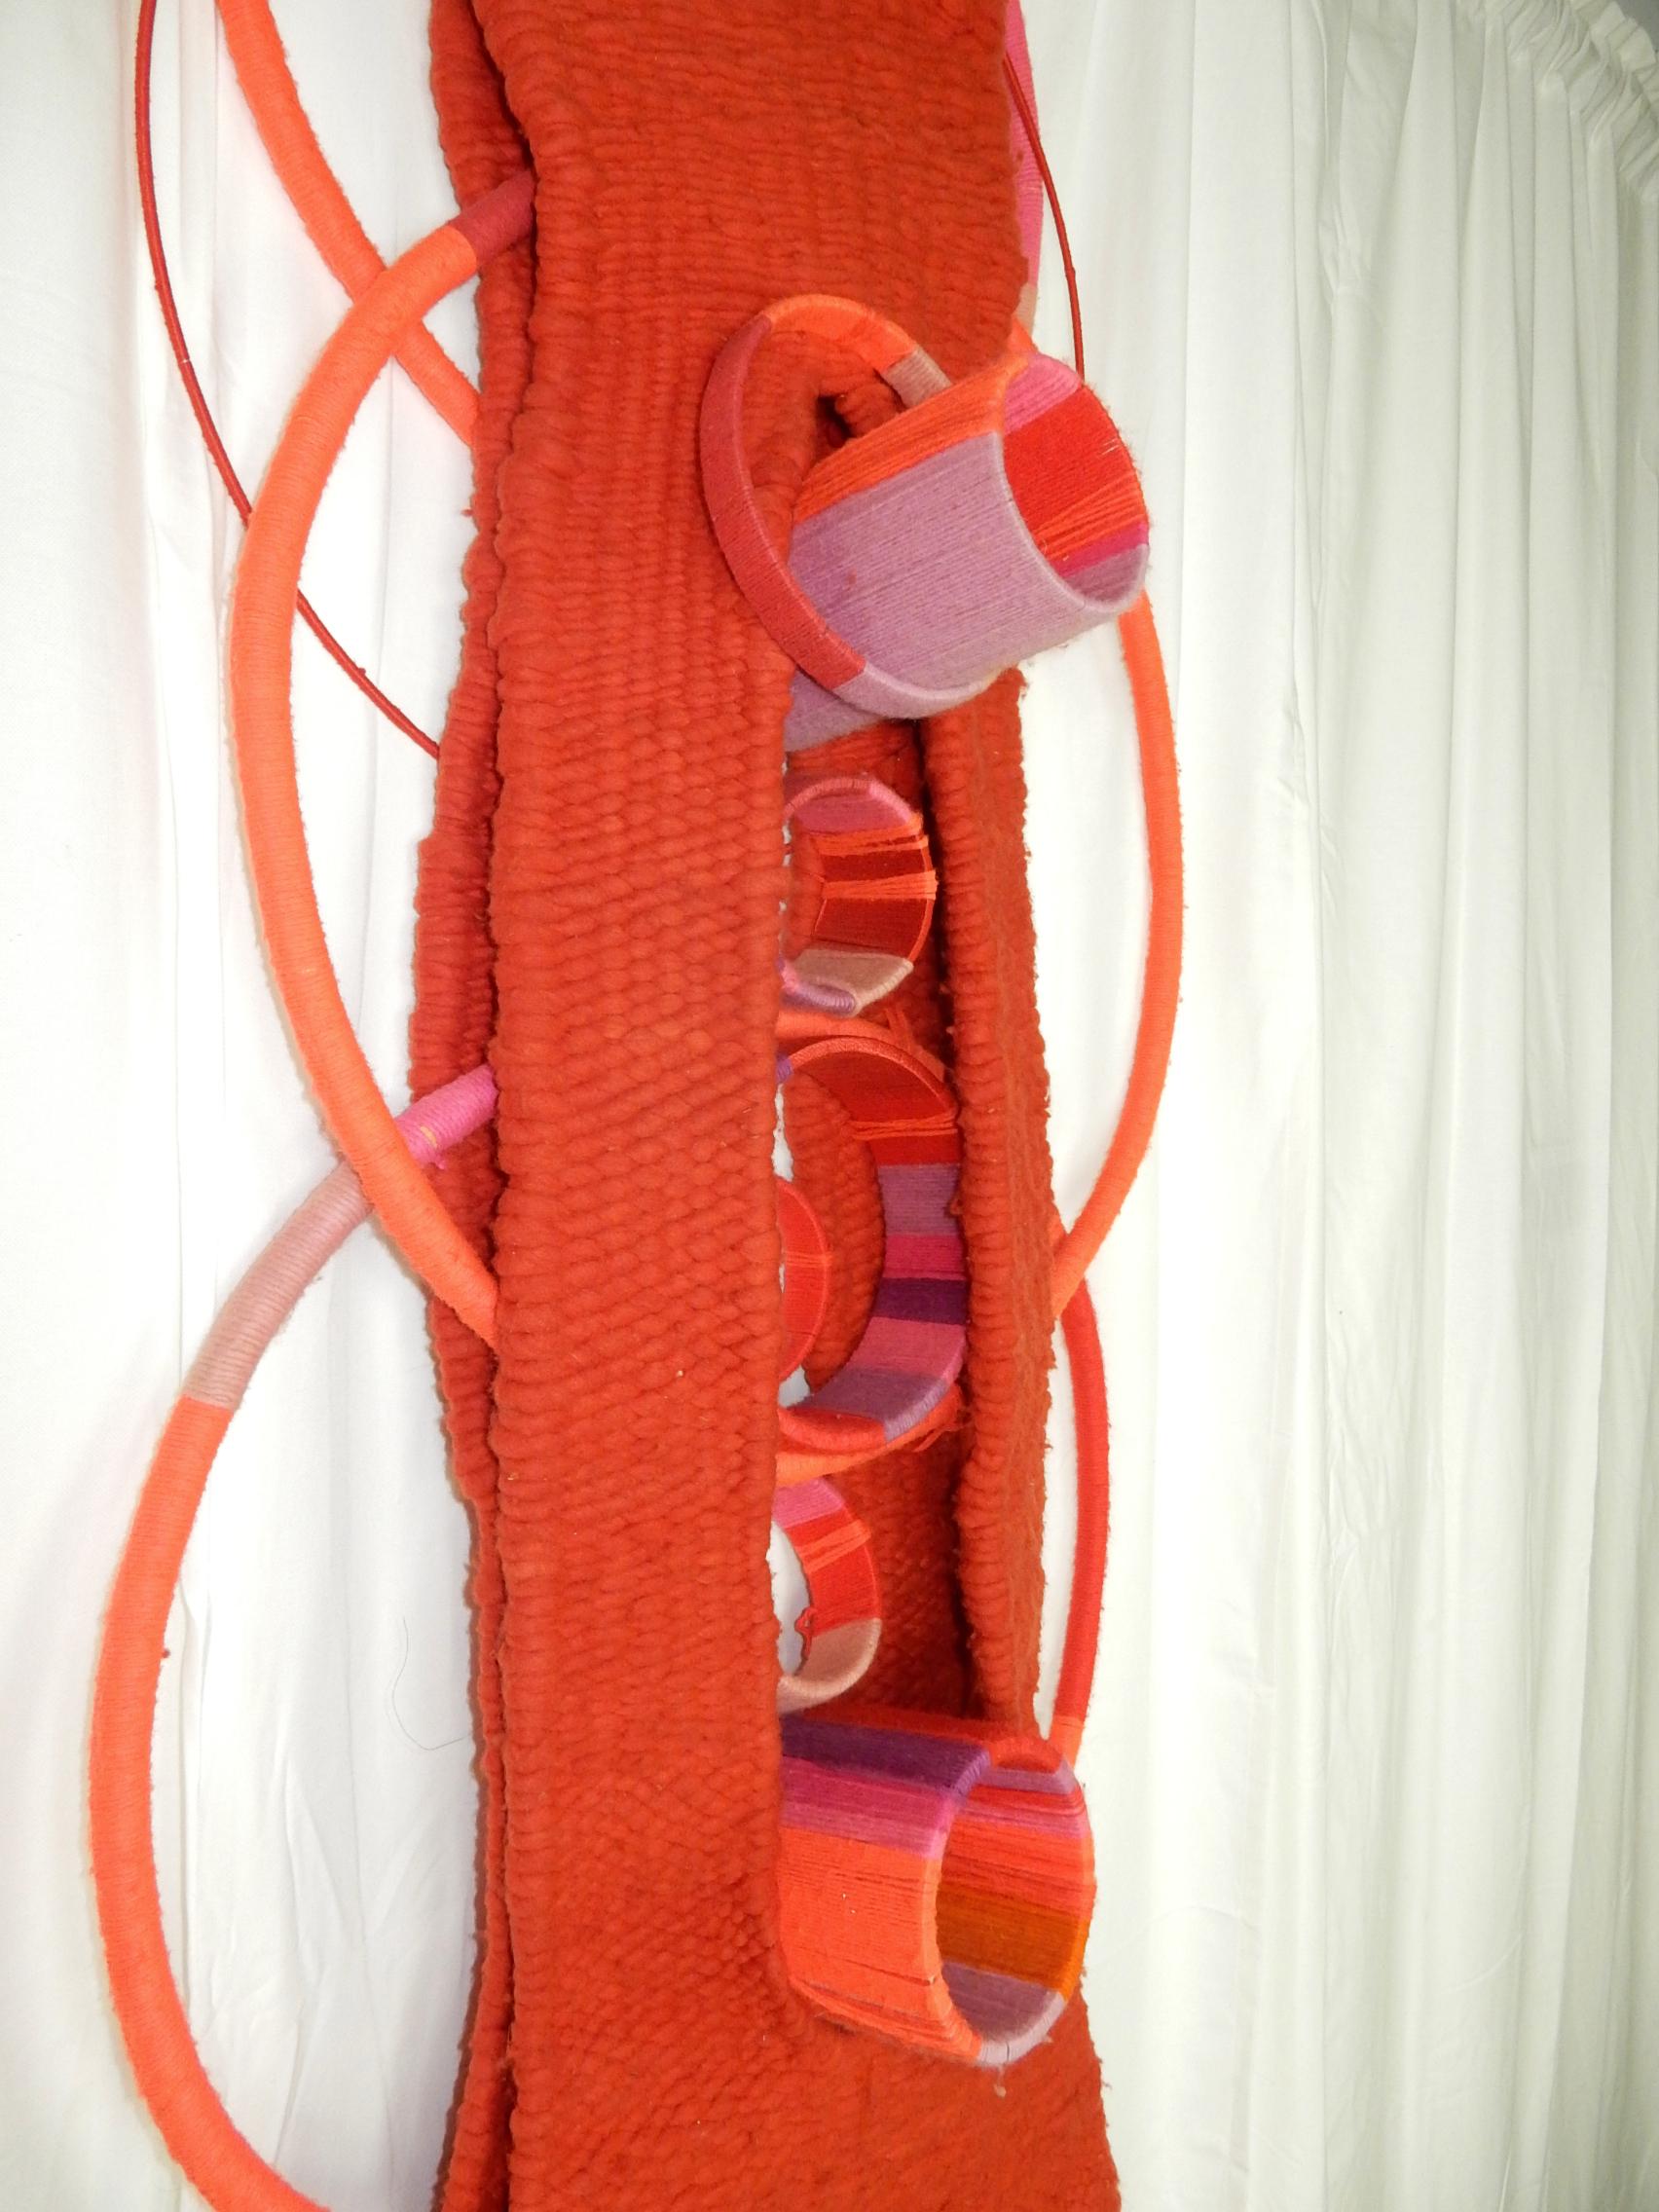 Mid-Century Modern Mexican Modernist Artist Marta Palau Wool Fabric Weaving Sculpture, 1978